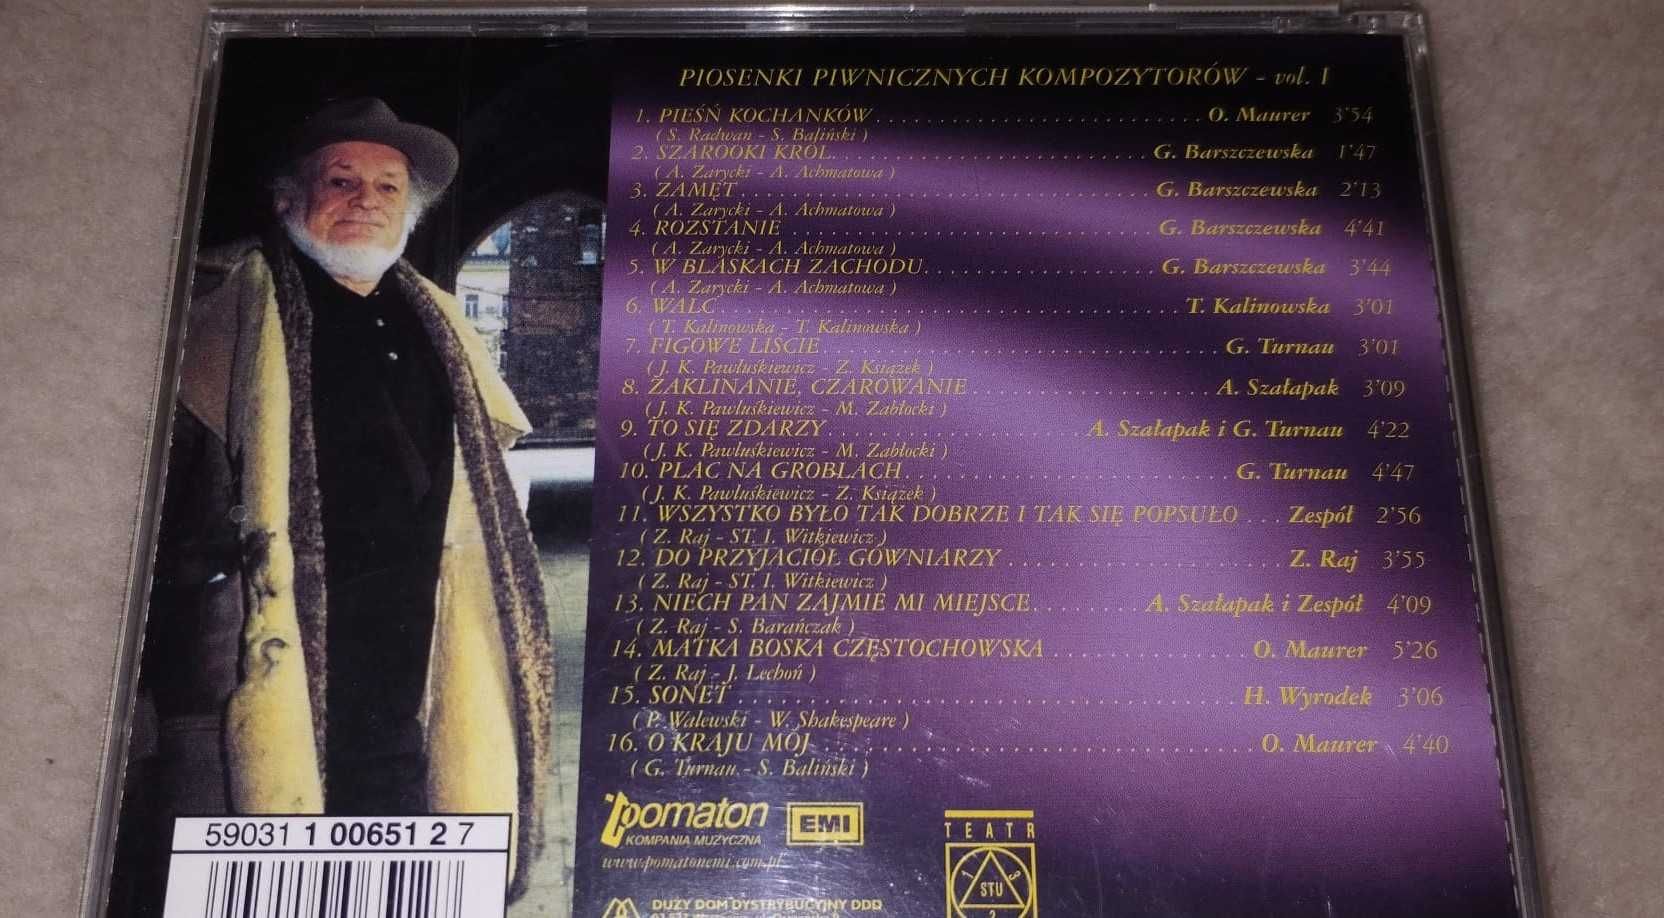 Piwnica pod Baranami, piosenki piwnicznych kompozytorów I, CD, muzyka